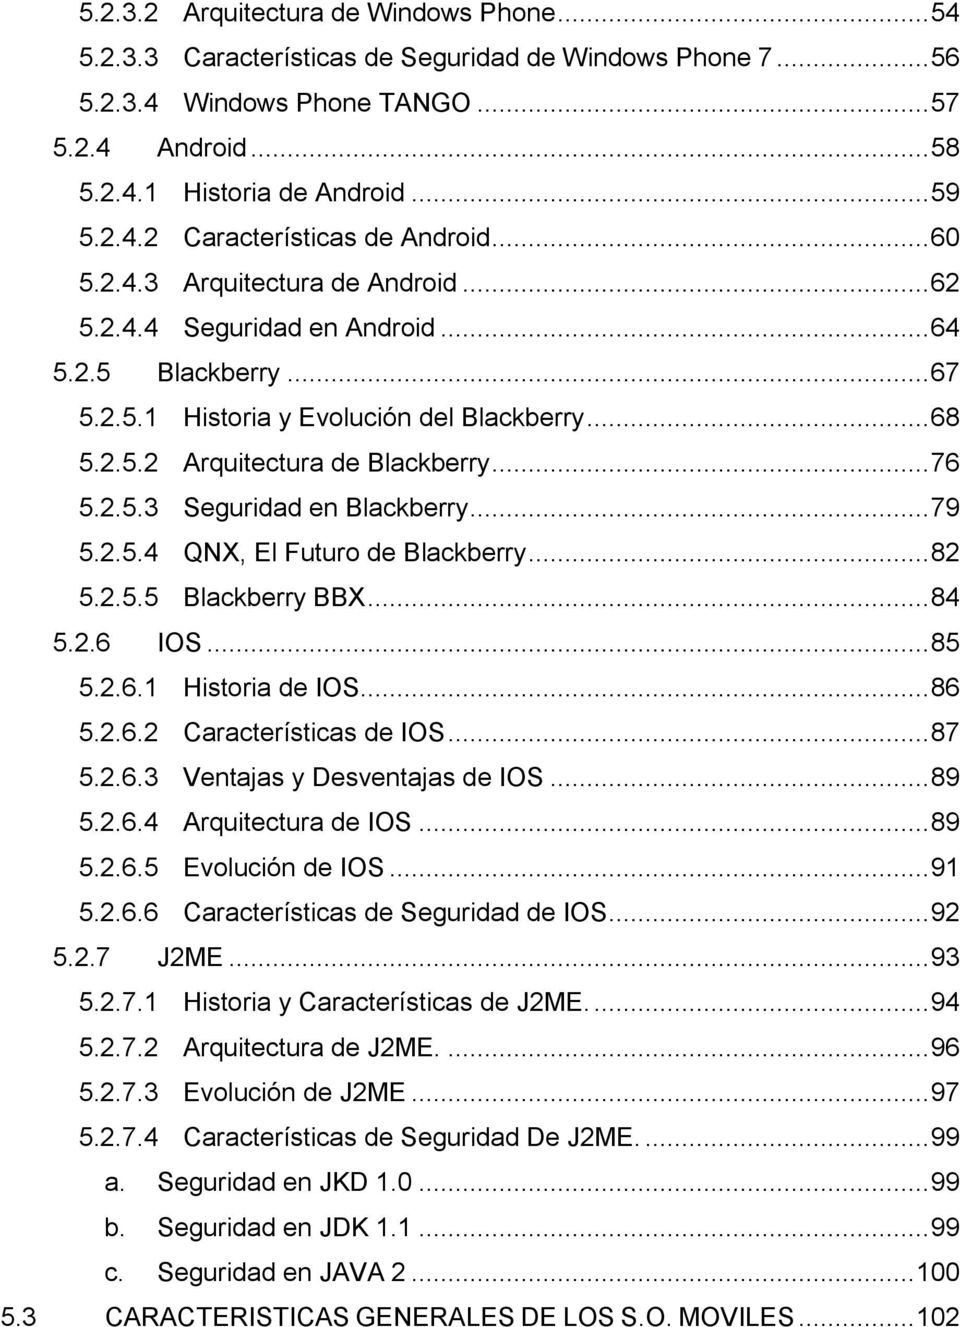 .. 79 5.2.5.4 QNX, El Futuro de Blackberry... 82 5.2.5.5 Blackberry BBX... 84 5.2.6 IOS... 85 5.2.6.1 Historia de IOS... 86 5.2.6.2 Características de IOS... 87 5.2.6.3 Ventajas y Desventajas de IOS.